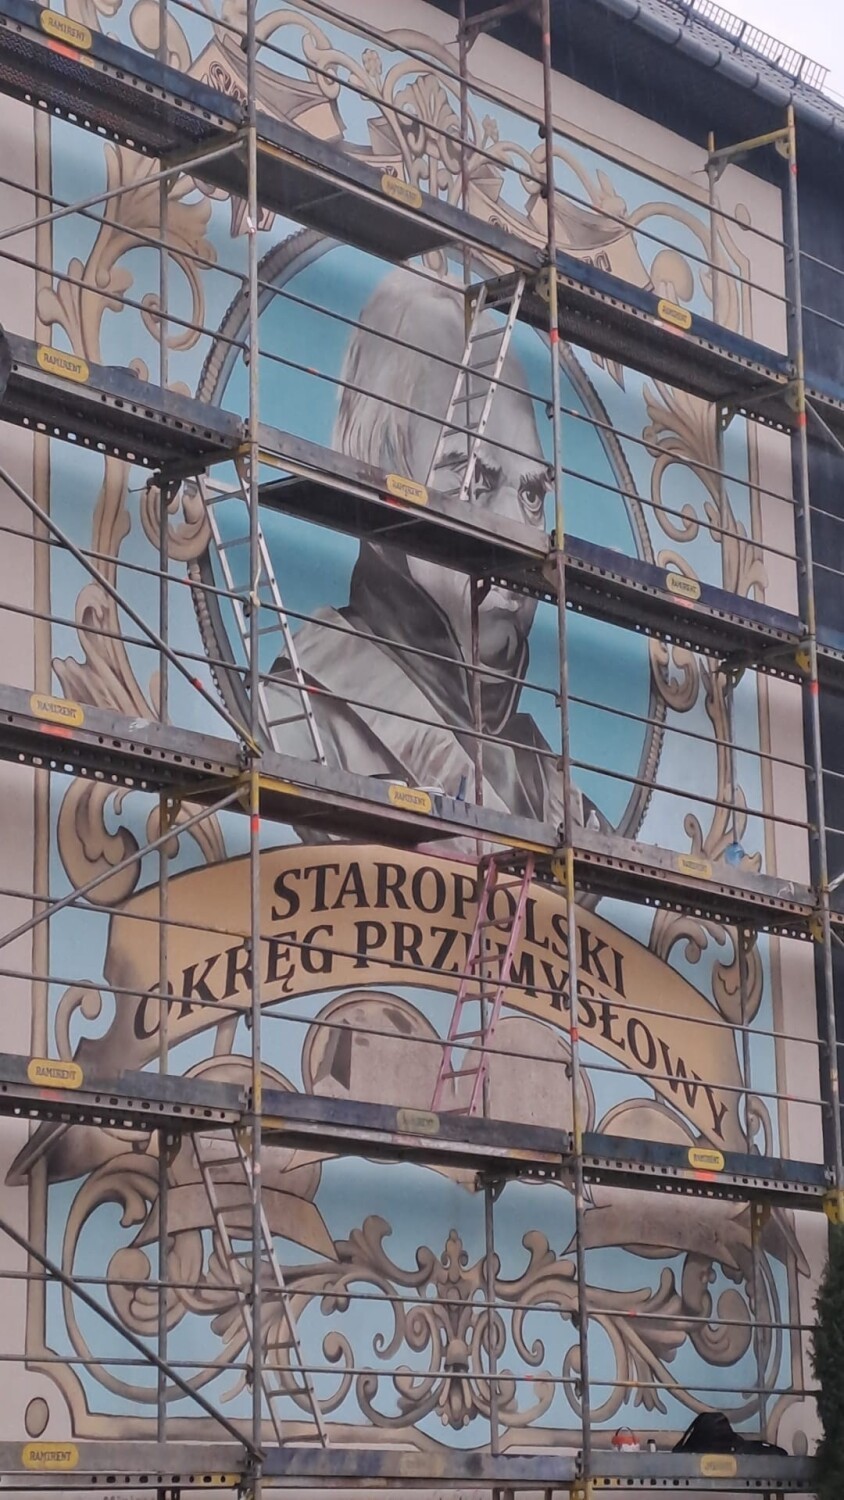 W Kielcach powstały dwa nowe murale. Jeden przedstawia Stanisława Staszica, a drugi maki, które są znakiem ogólnopolskiej kampanii. Zdjęcia